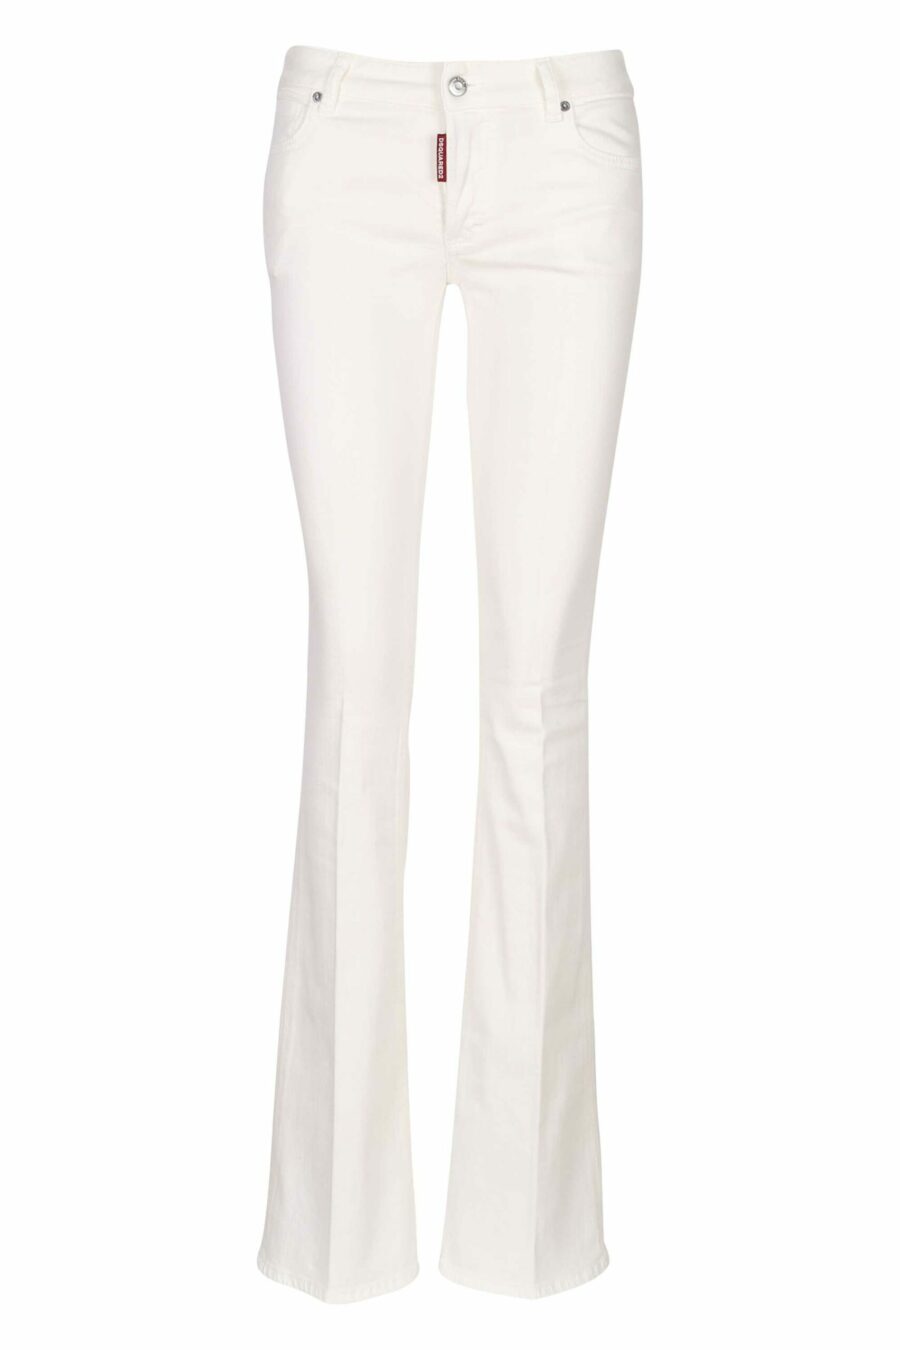 Weiße "twiggy jean" Jeans mit weitem Stiefel - 8054148307912 skaliert